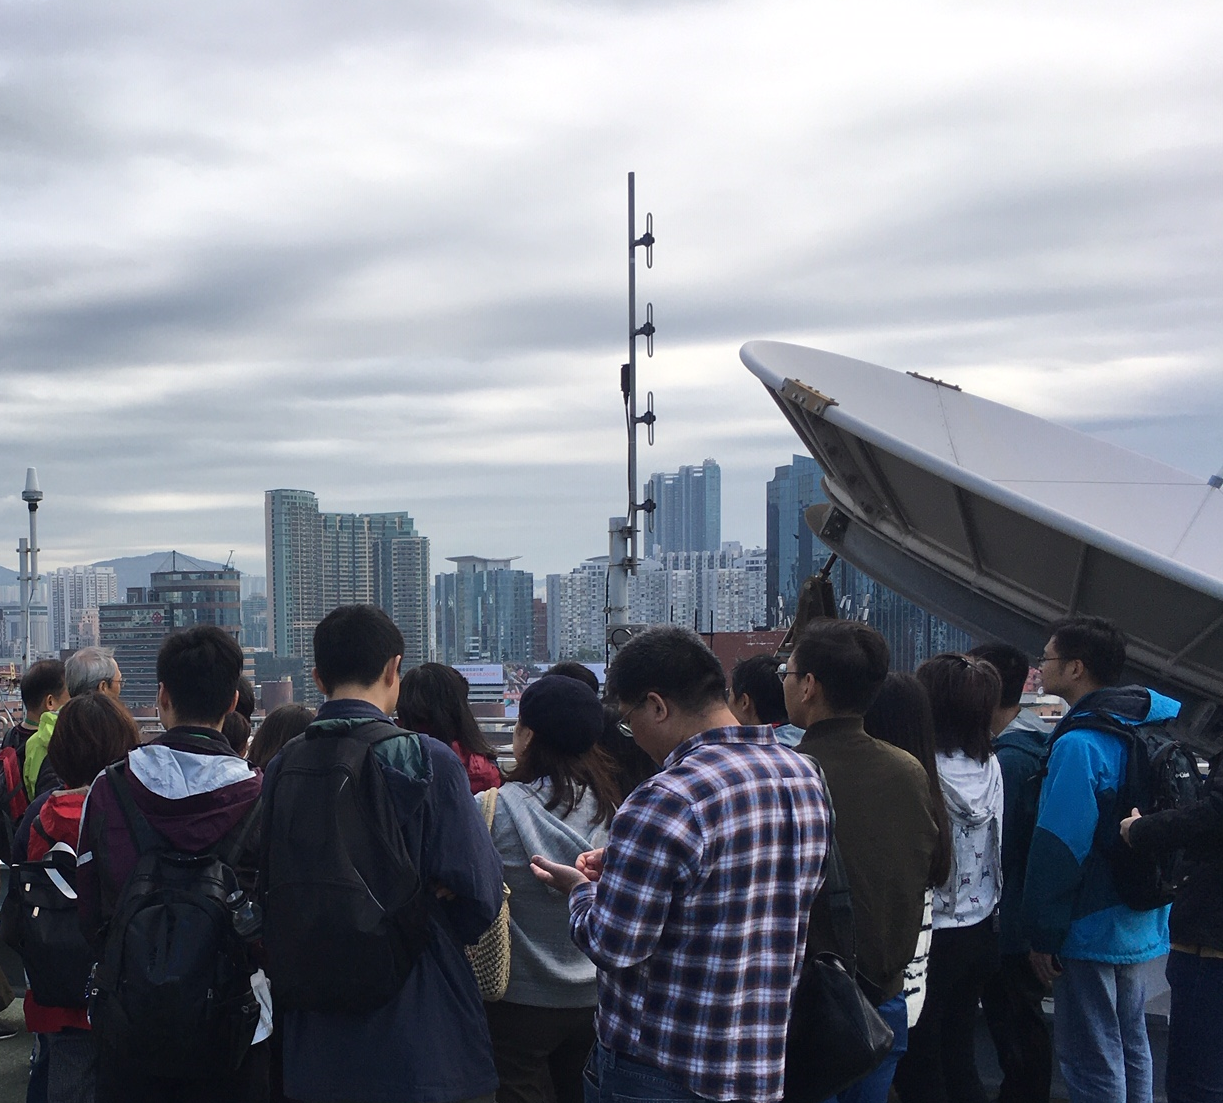 香港天文台将于十月至十一月举办天气观测课程，学员可进行实地天气观测练习。